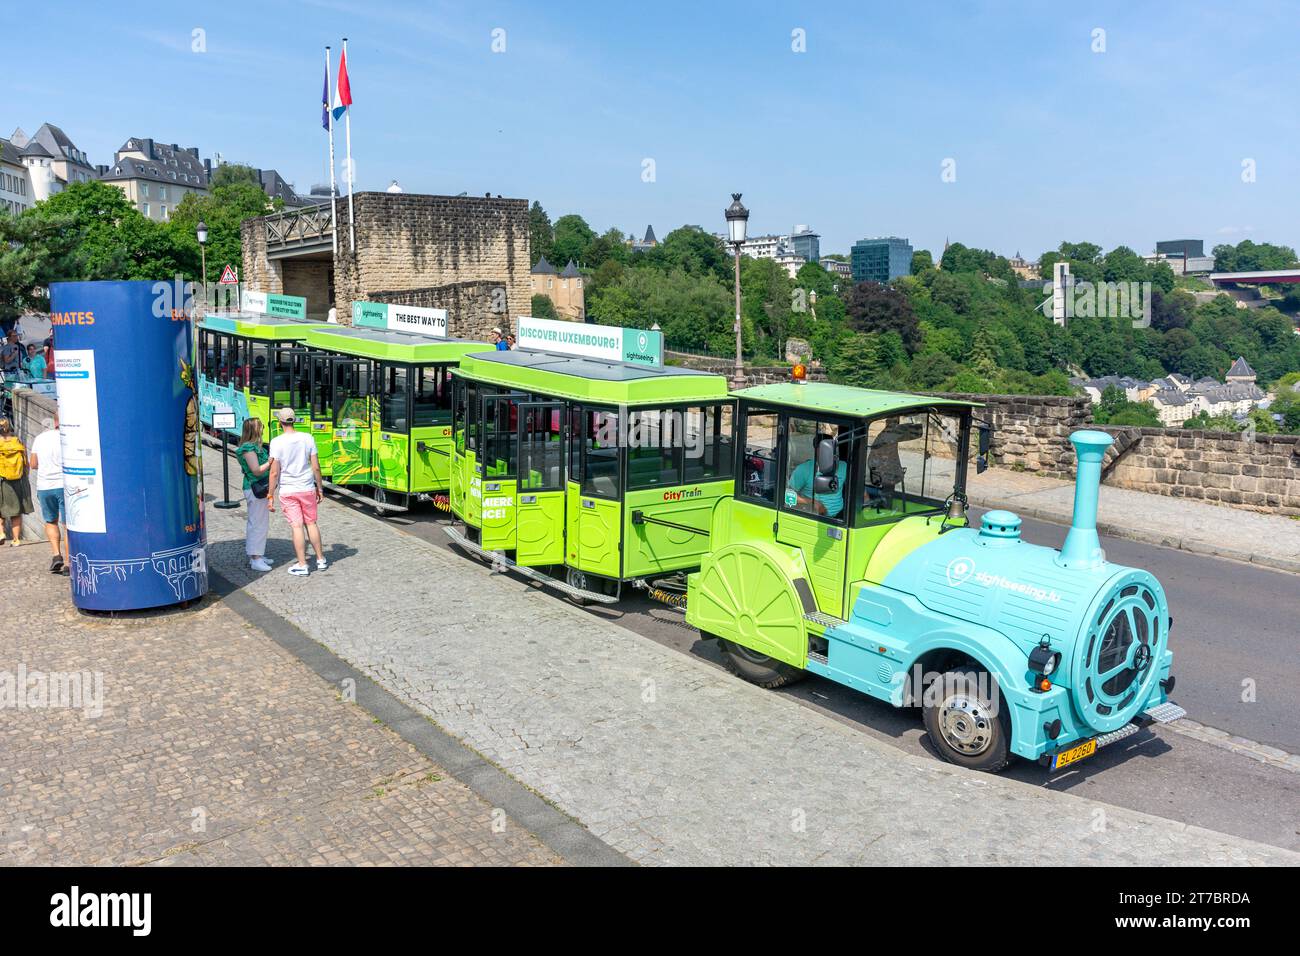 Arrêt City train dans la vieille ville, Mont de Clausen, ville haute, ville de Luxembourg, Luxembourg Banque D'Images